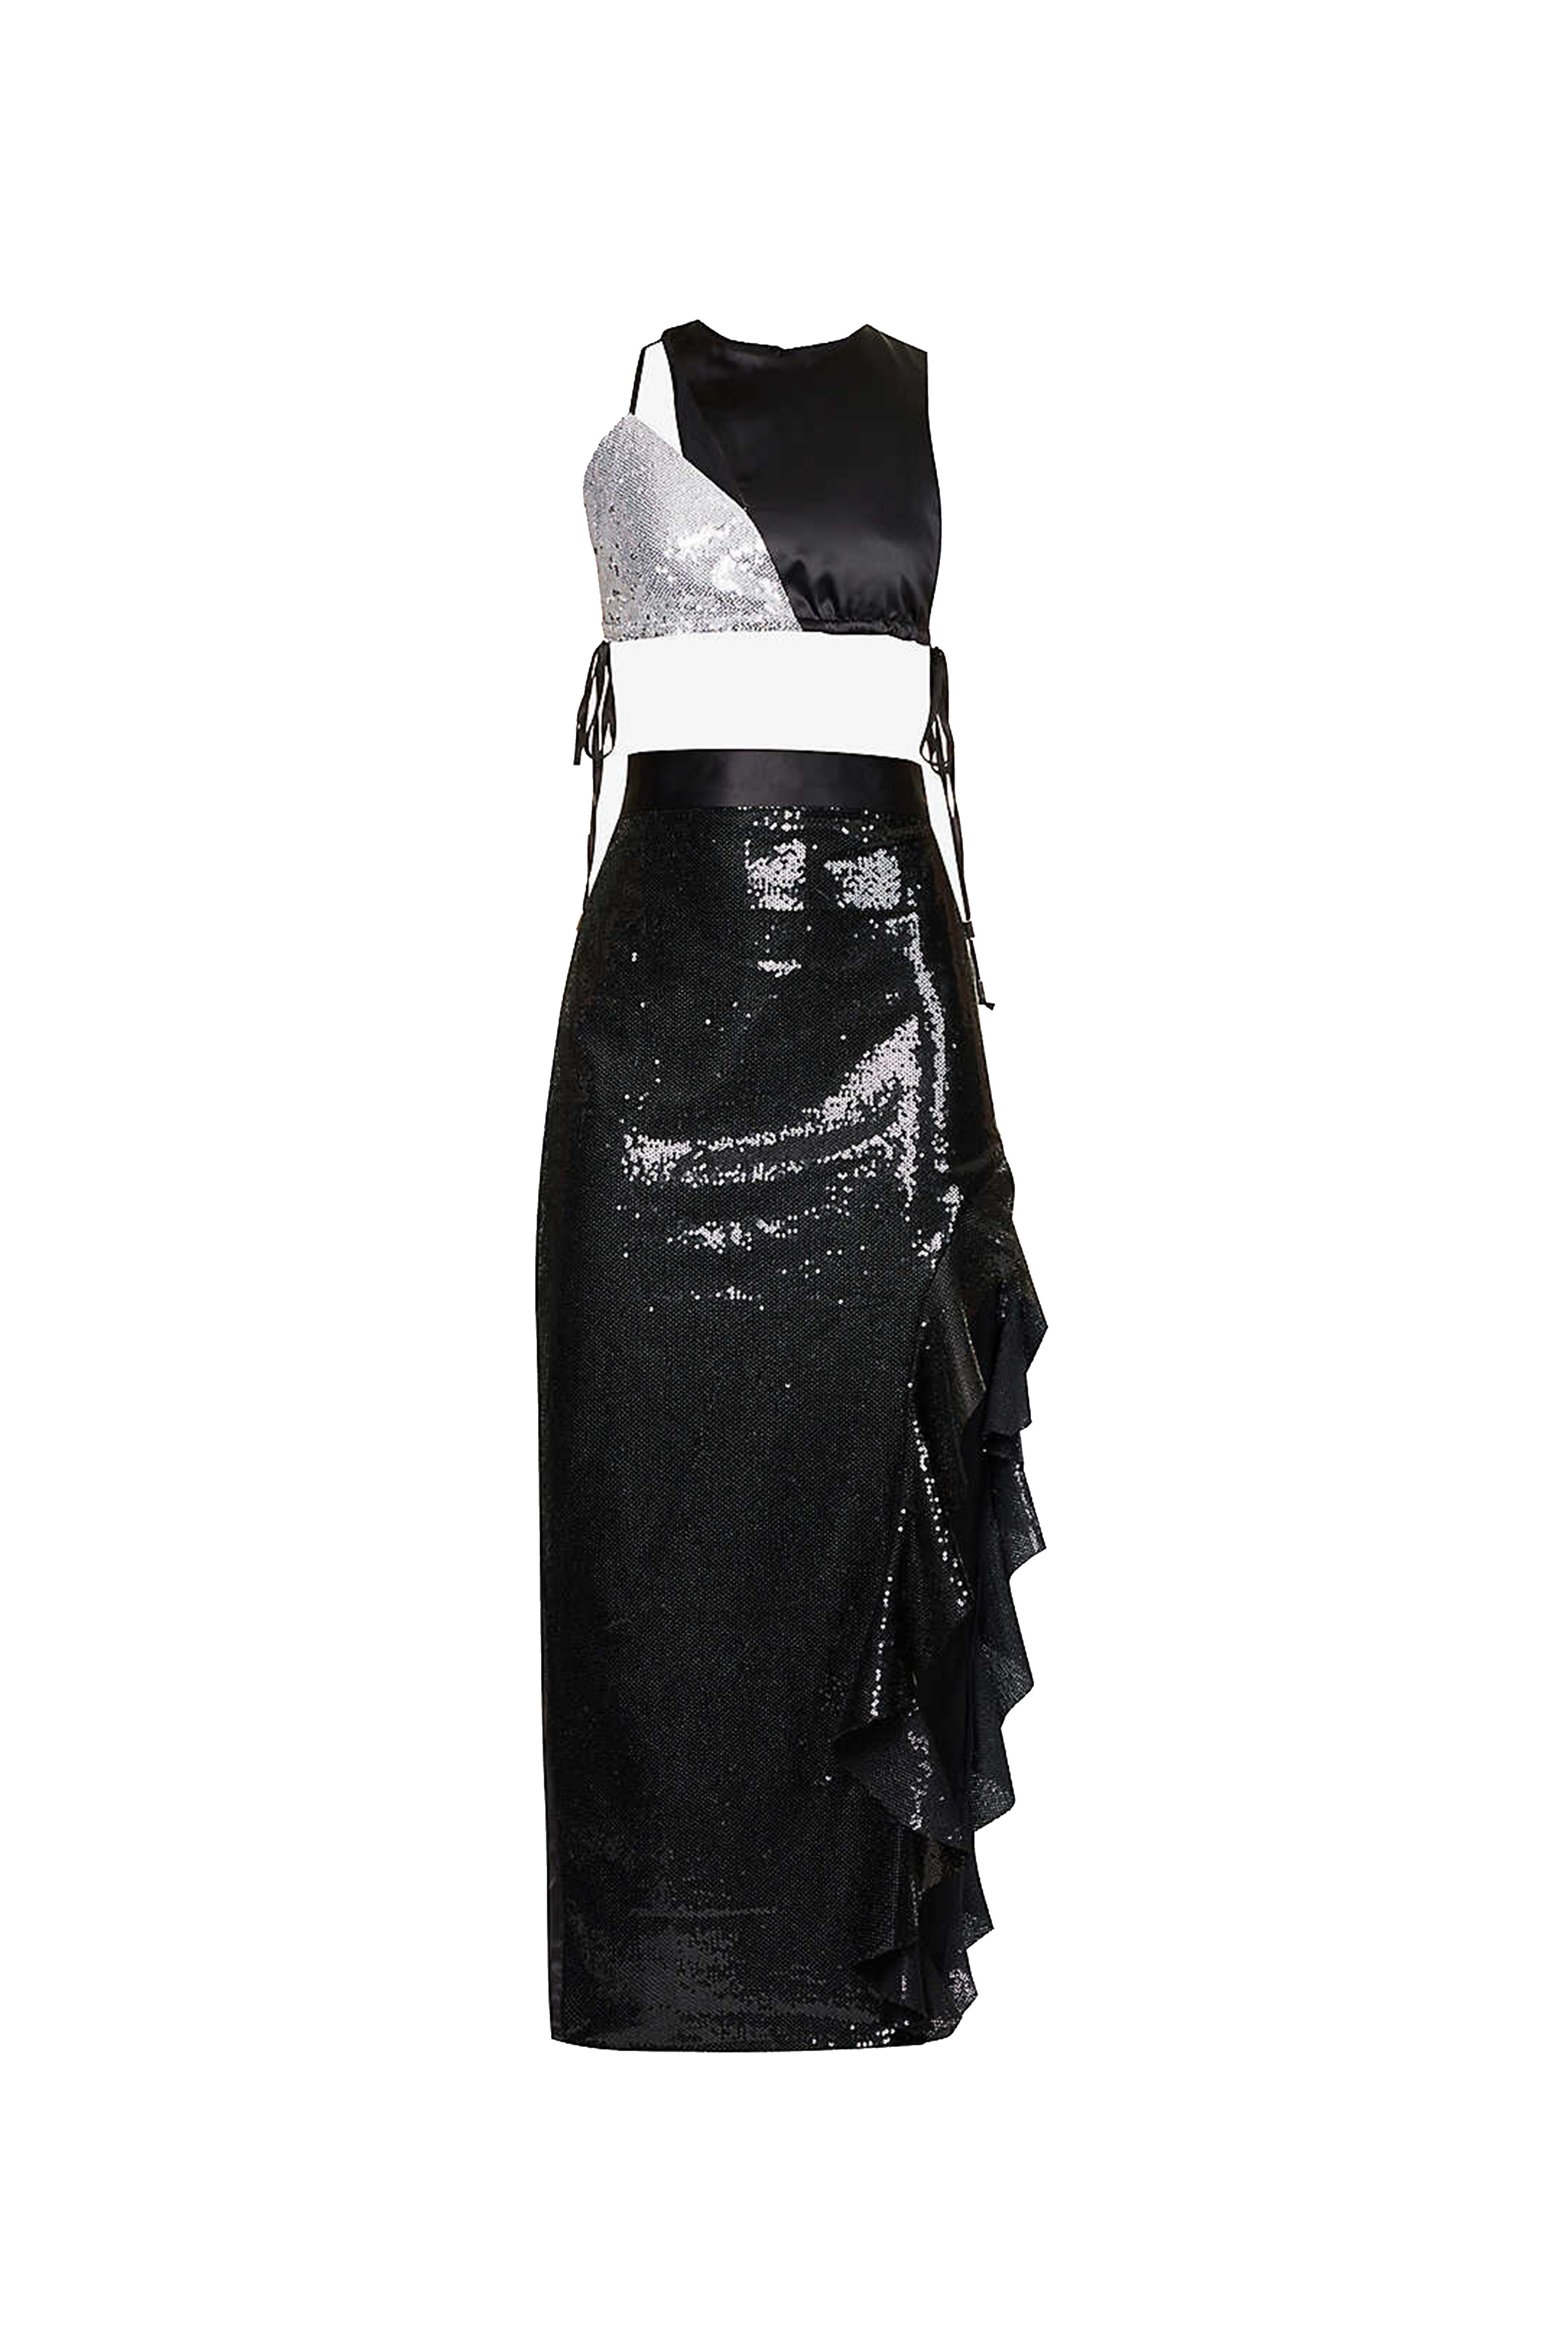 Shop Amy Lynn Women's Black Candance Top & Skirt Set